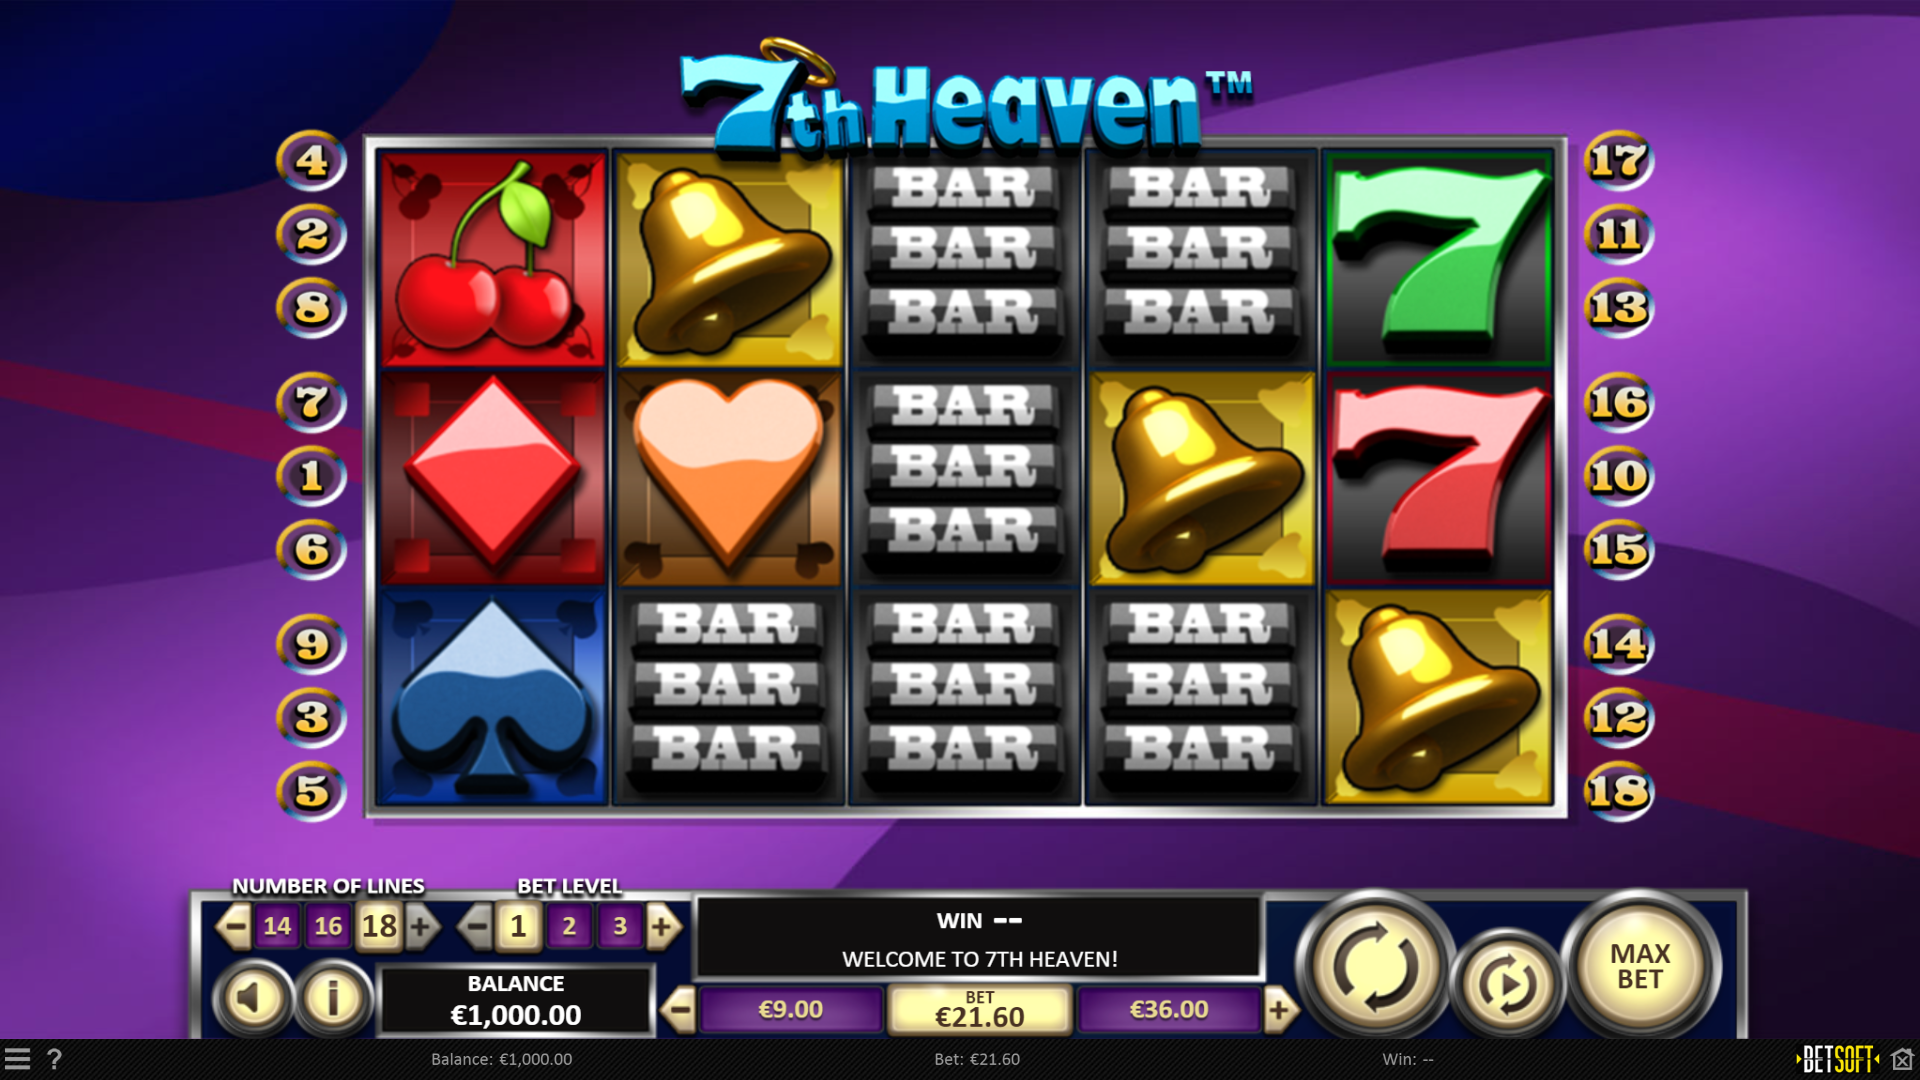 7th Heaven - Main Game